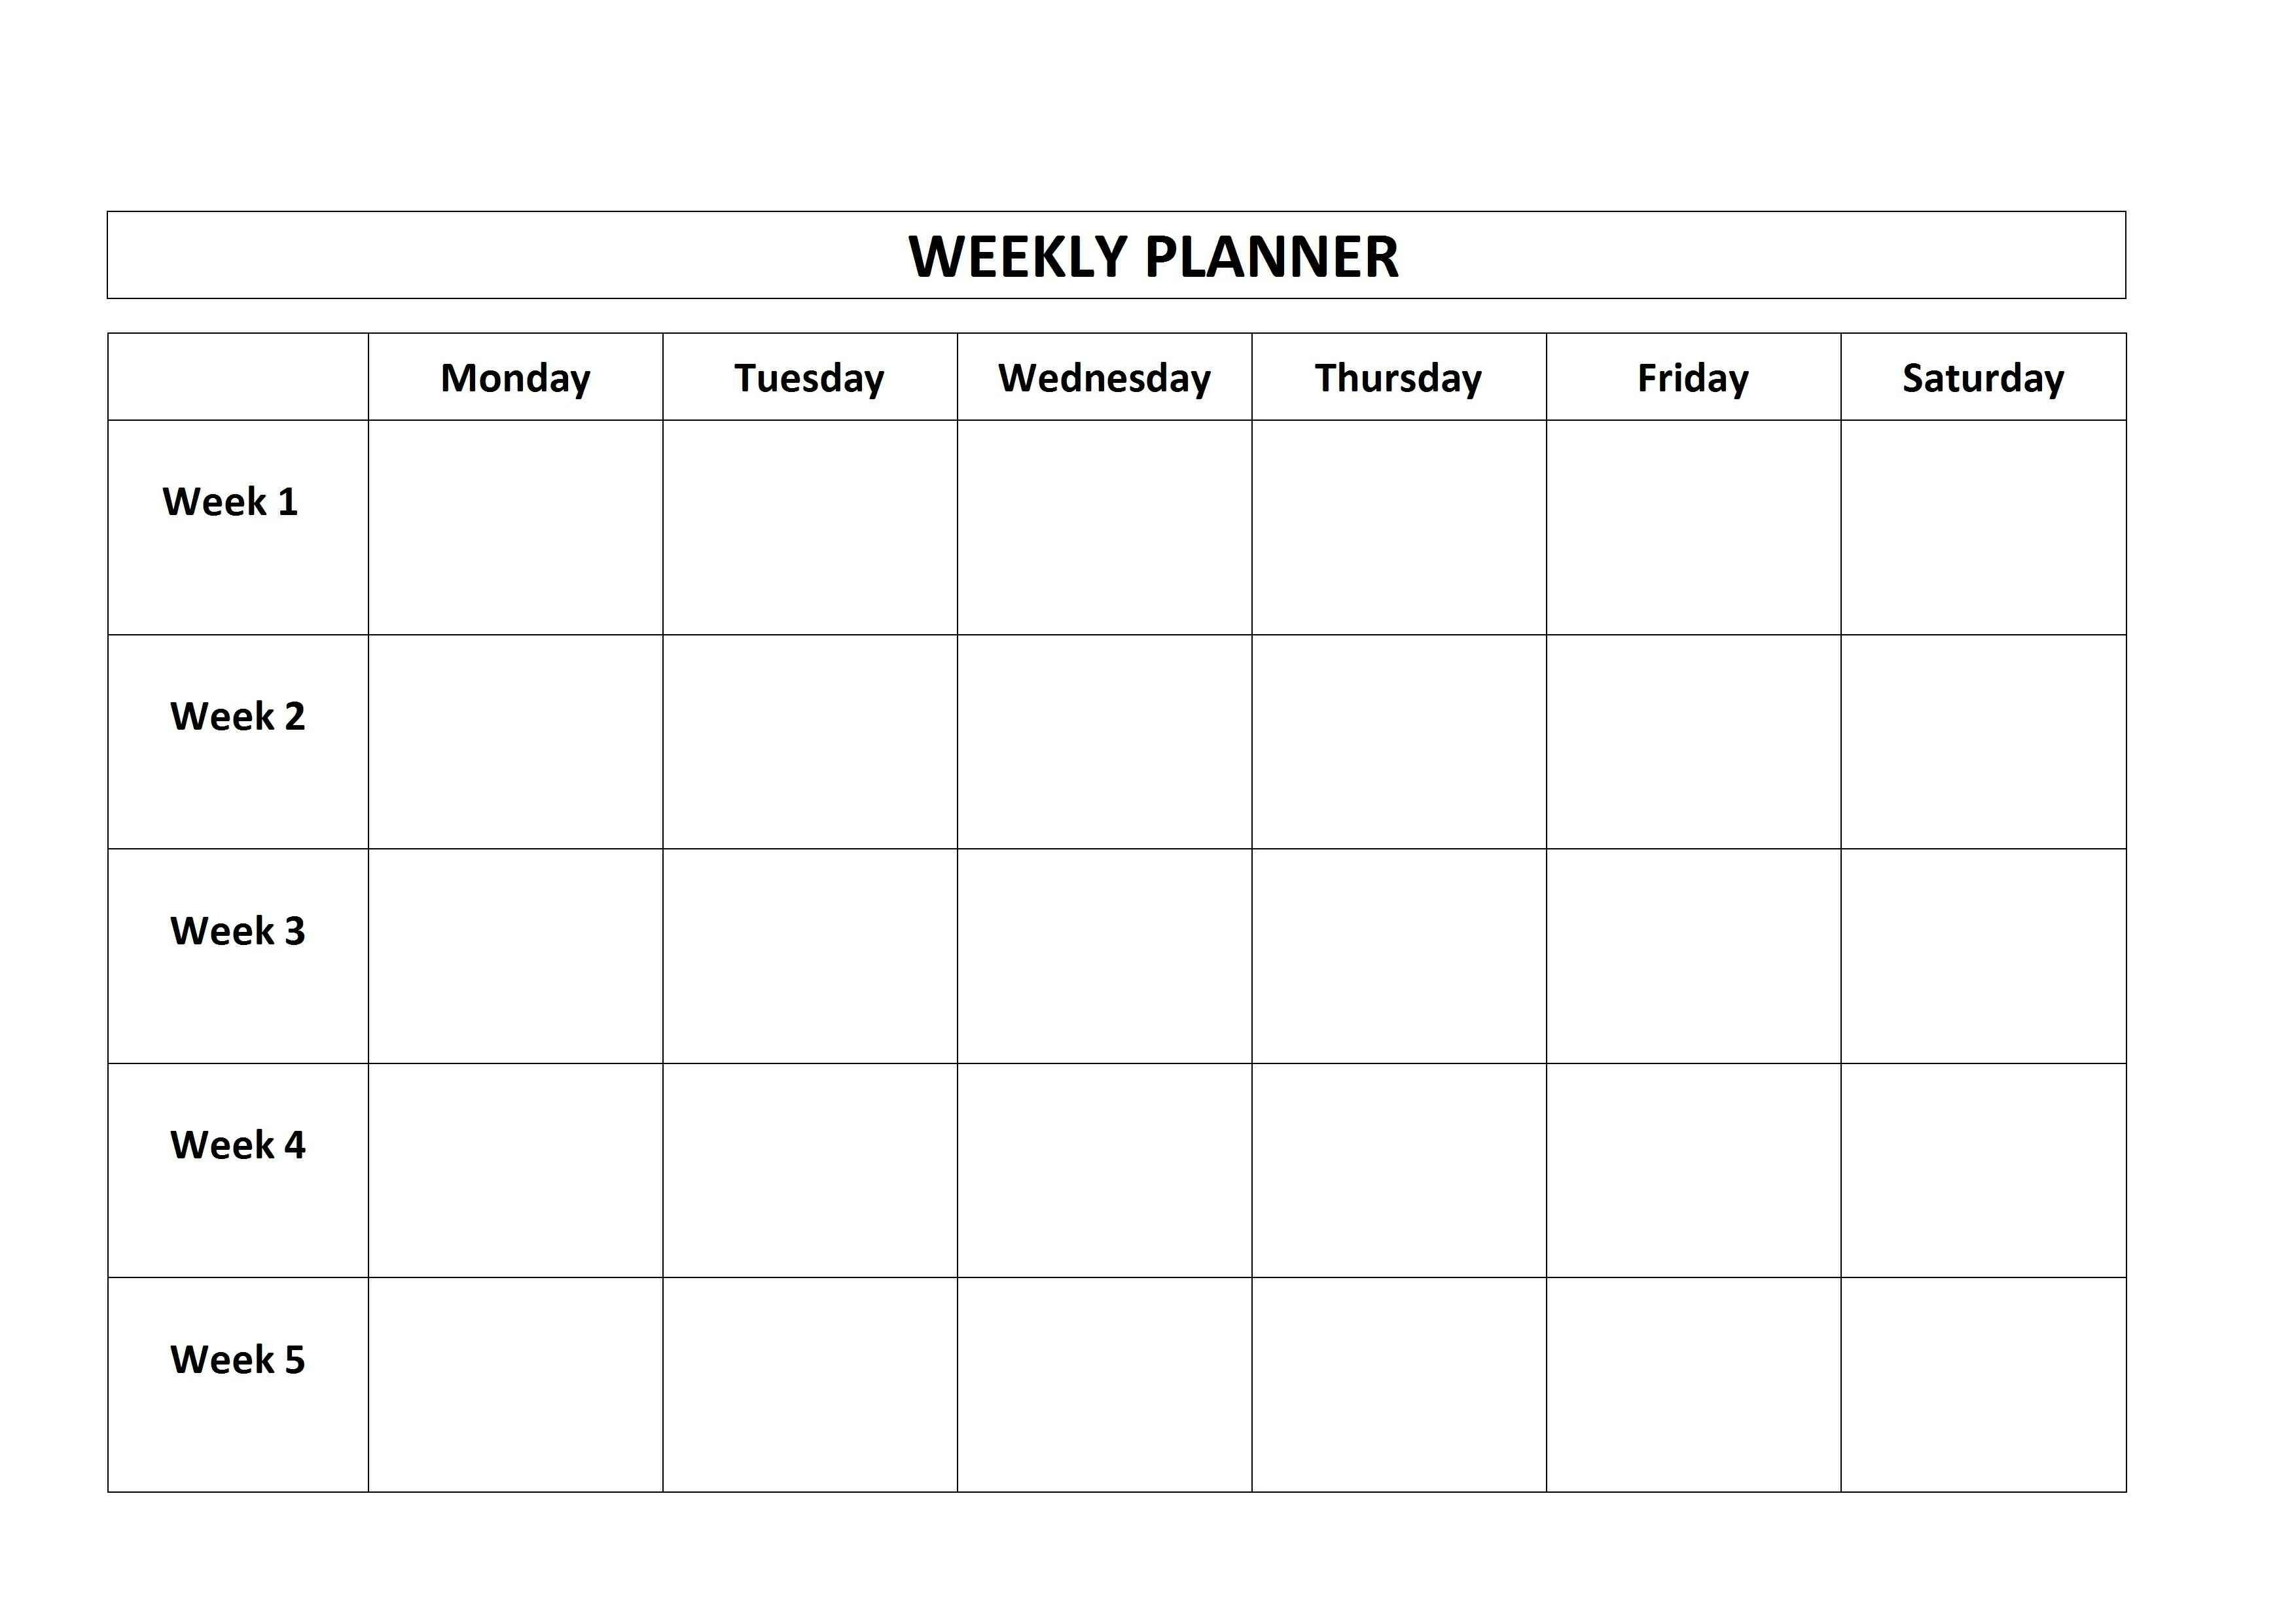 Monthly Calendar 5 Day Week | Calendar Design Ideas-5 Day Week Calendar Template